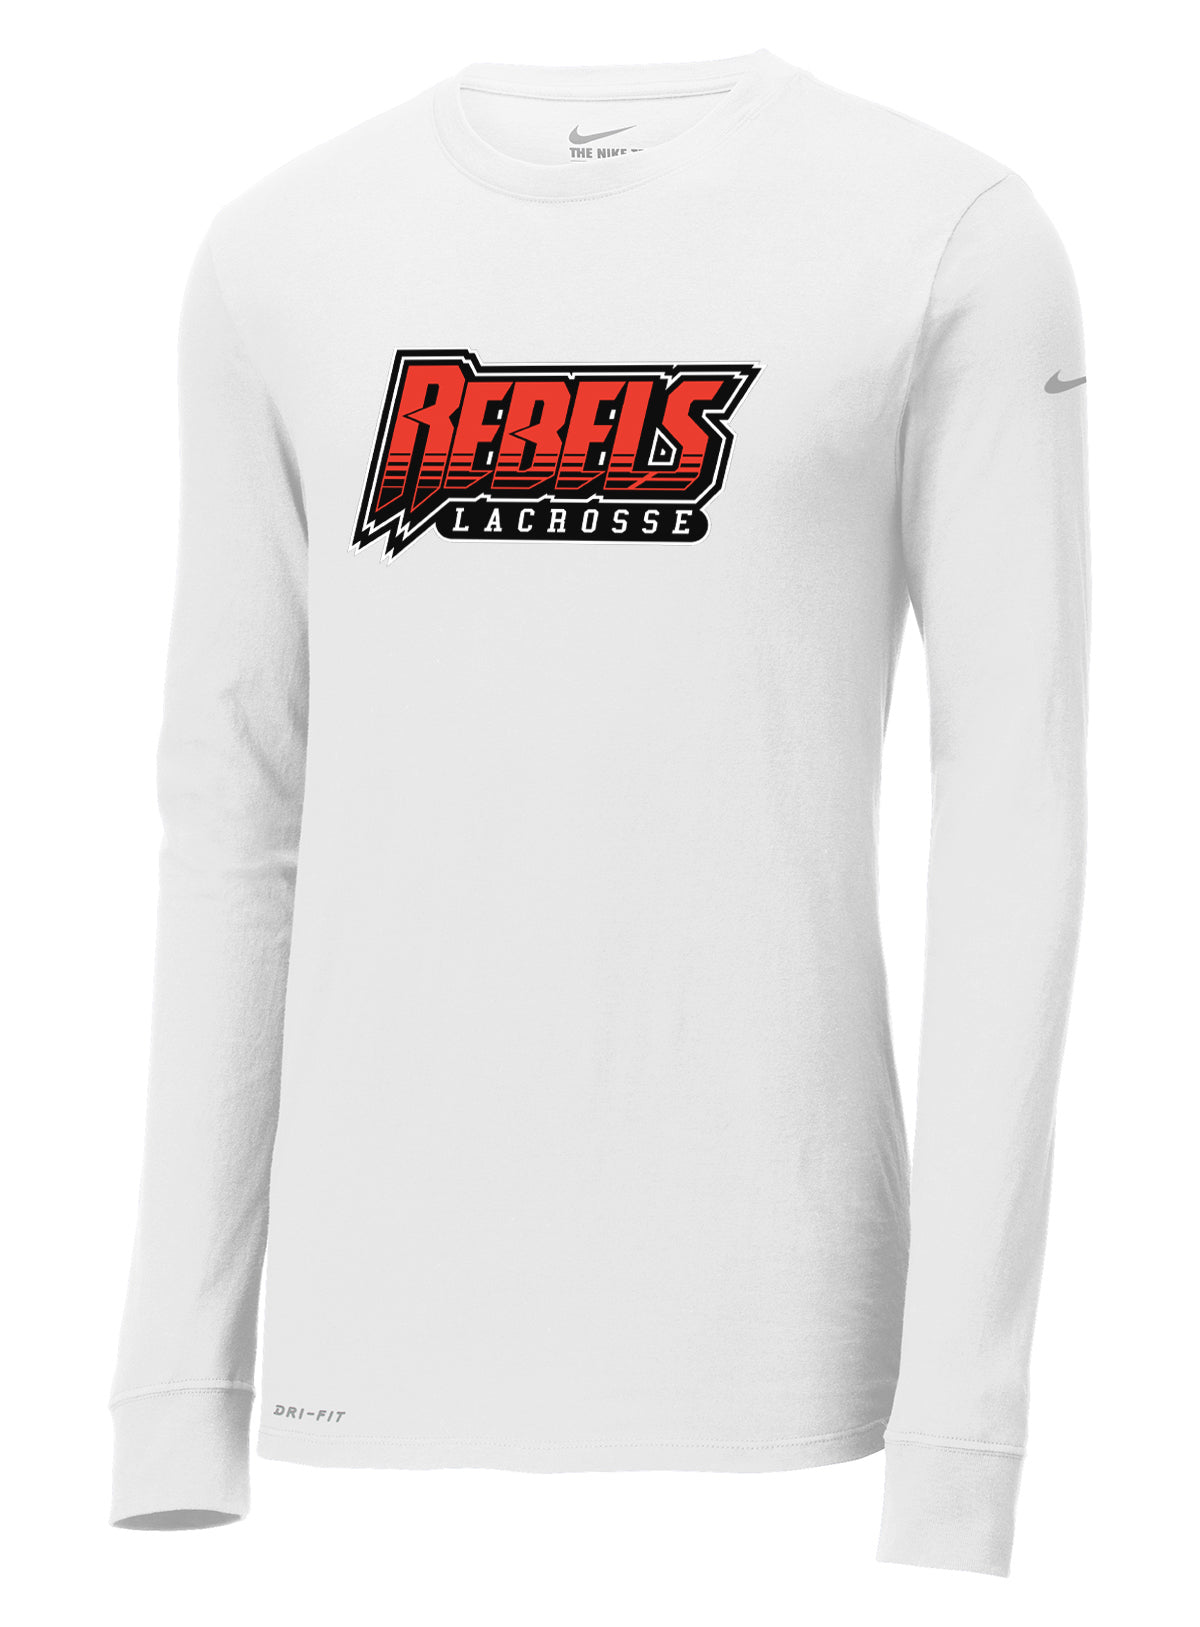 Rebels Lacrosse White Nike Dri-FIT Long Sleeve Tee